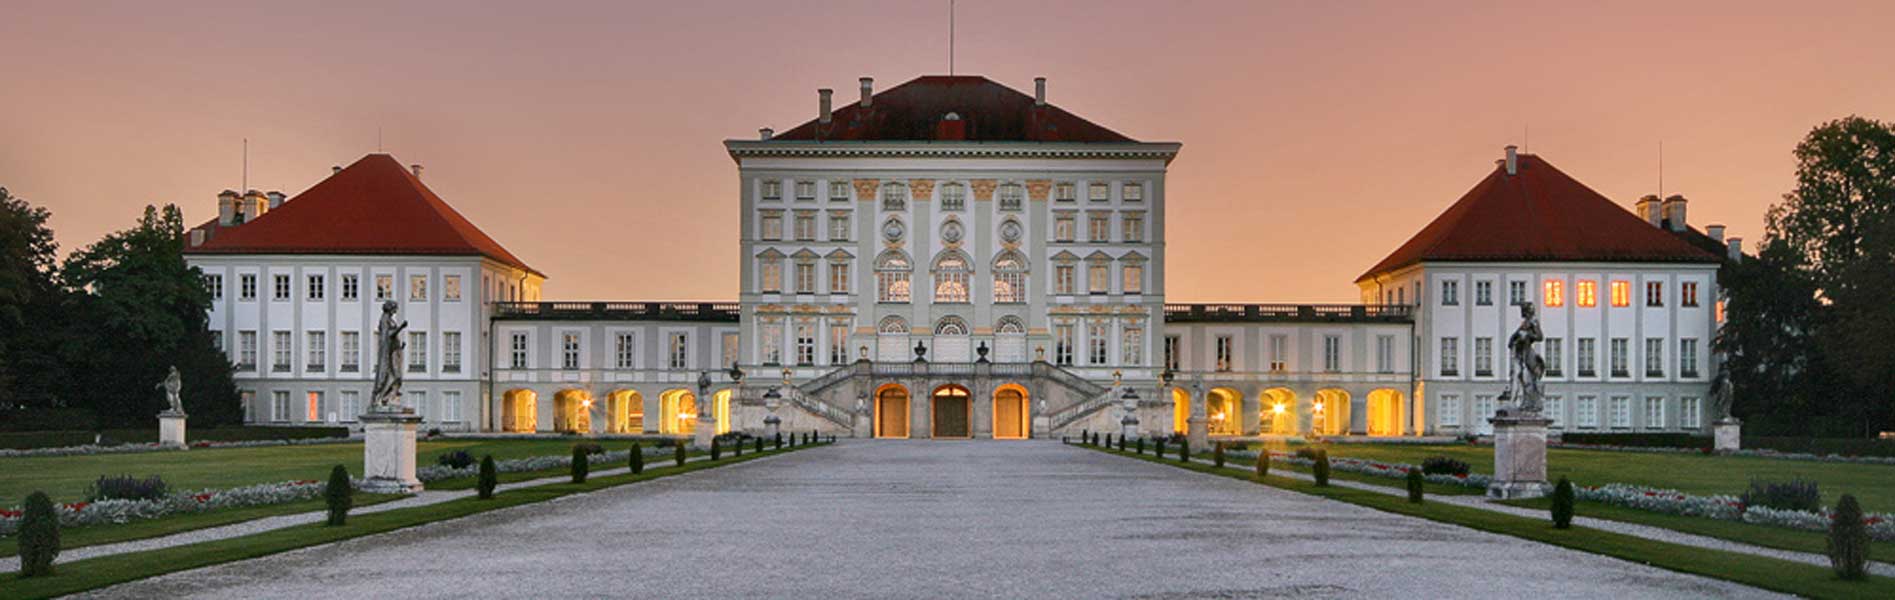 Schloss-Nymphenburg-Unikorn-Catering-Location-München